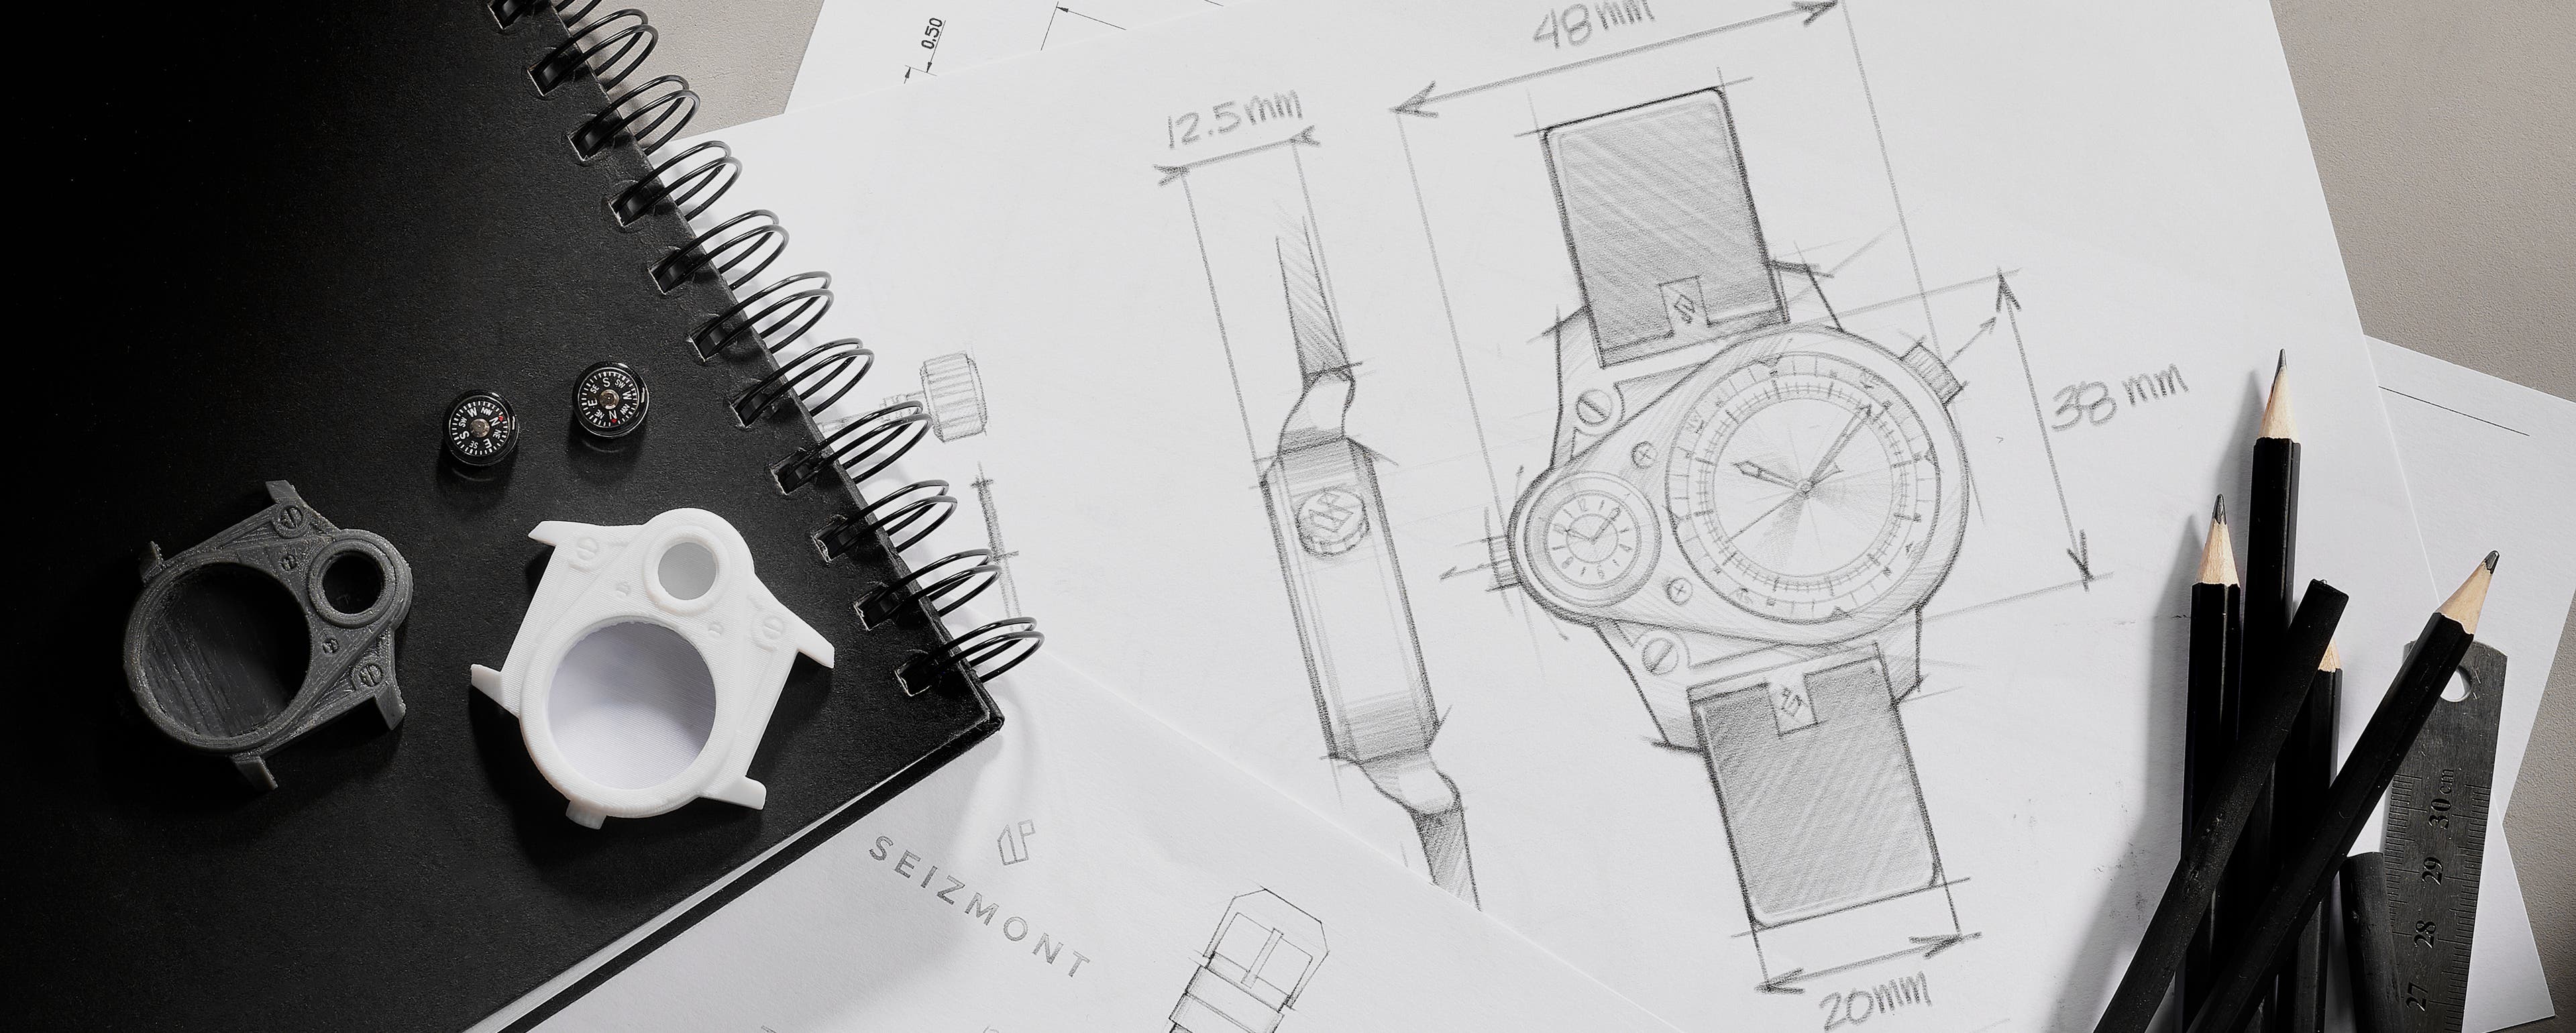 Descubre cómo diseñamos un reloj para tus aventuras